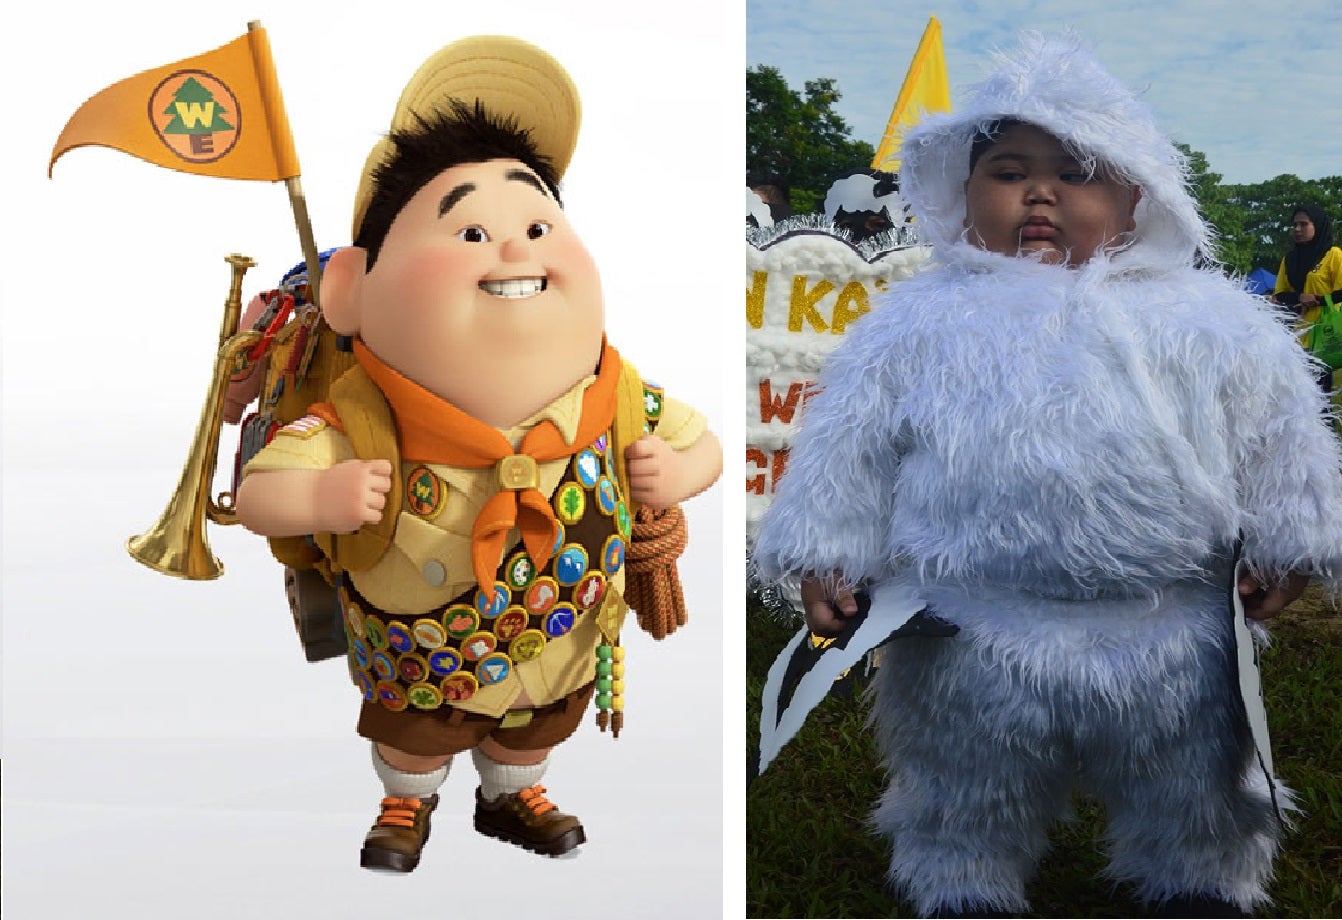 Sandakan Kindergarten Parade Melts Netizens' Heart With Too Much Cuteness! - WORLD OF BUZZ